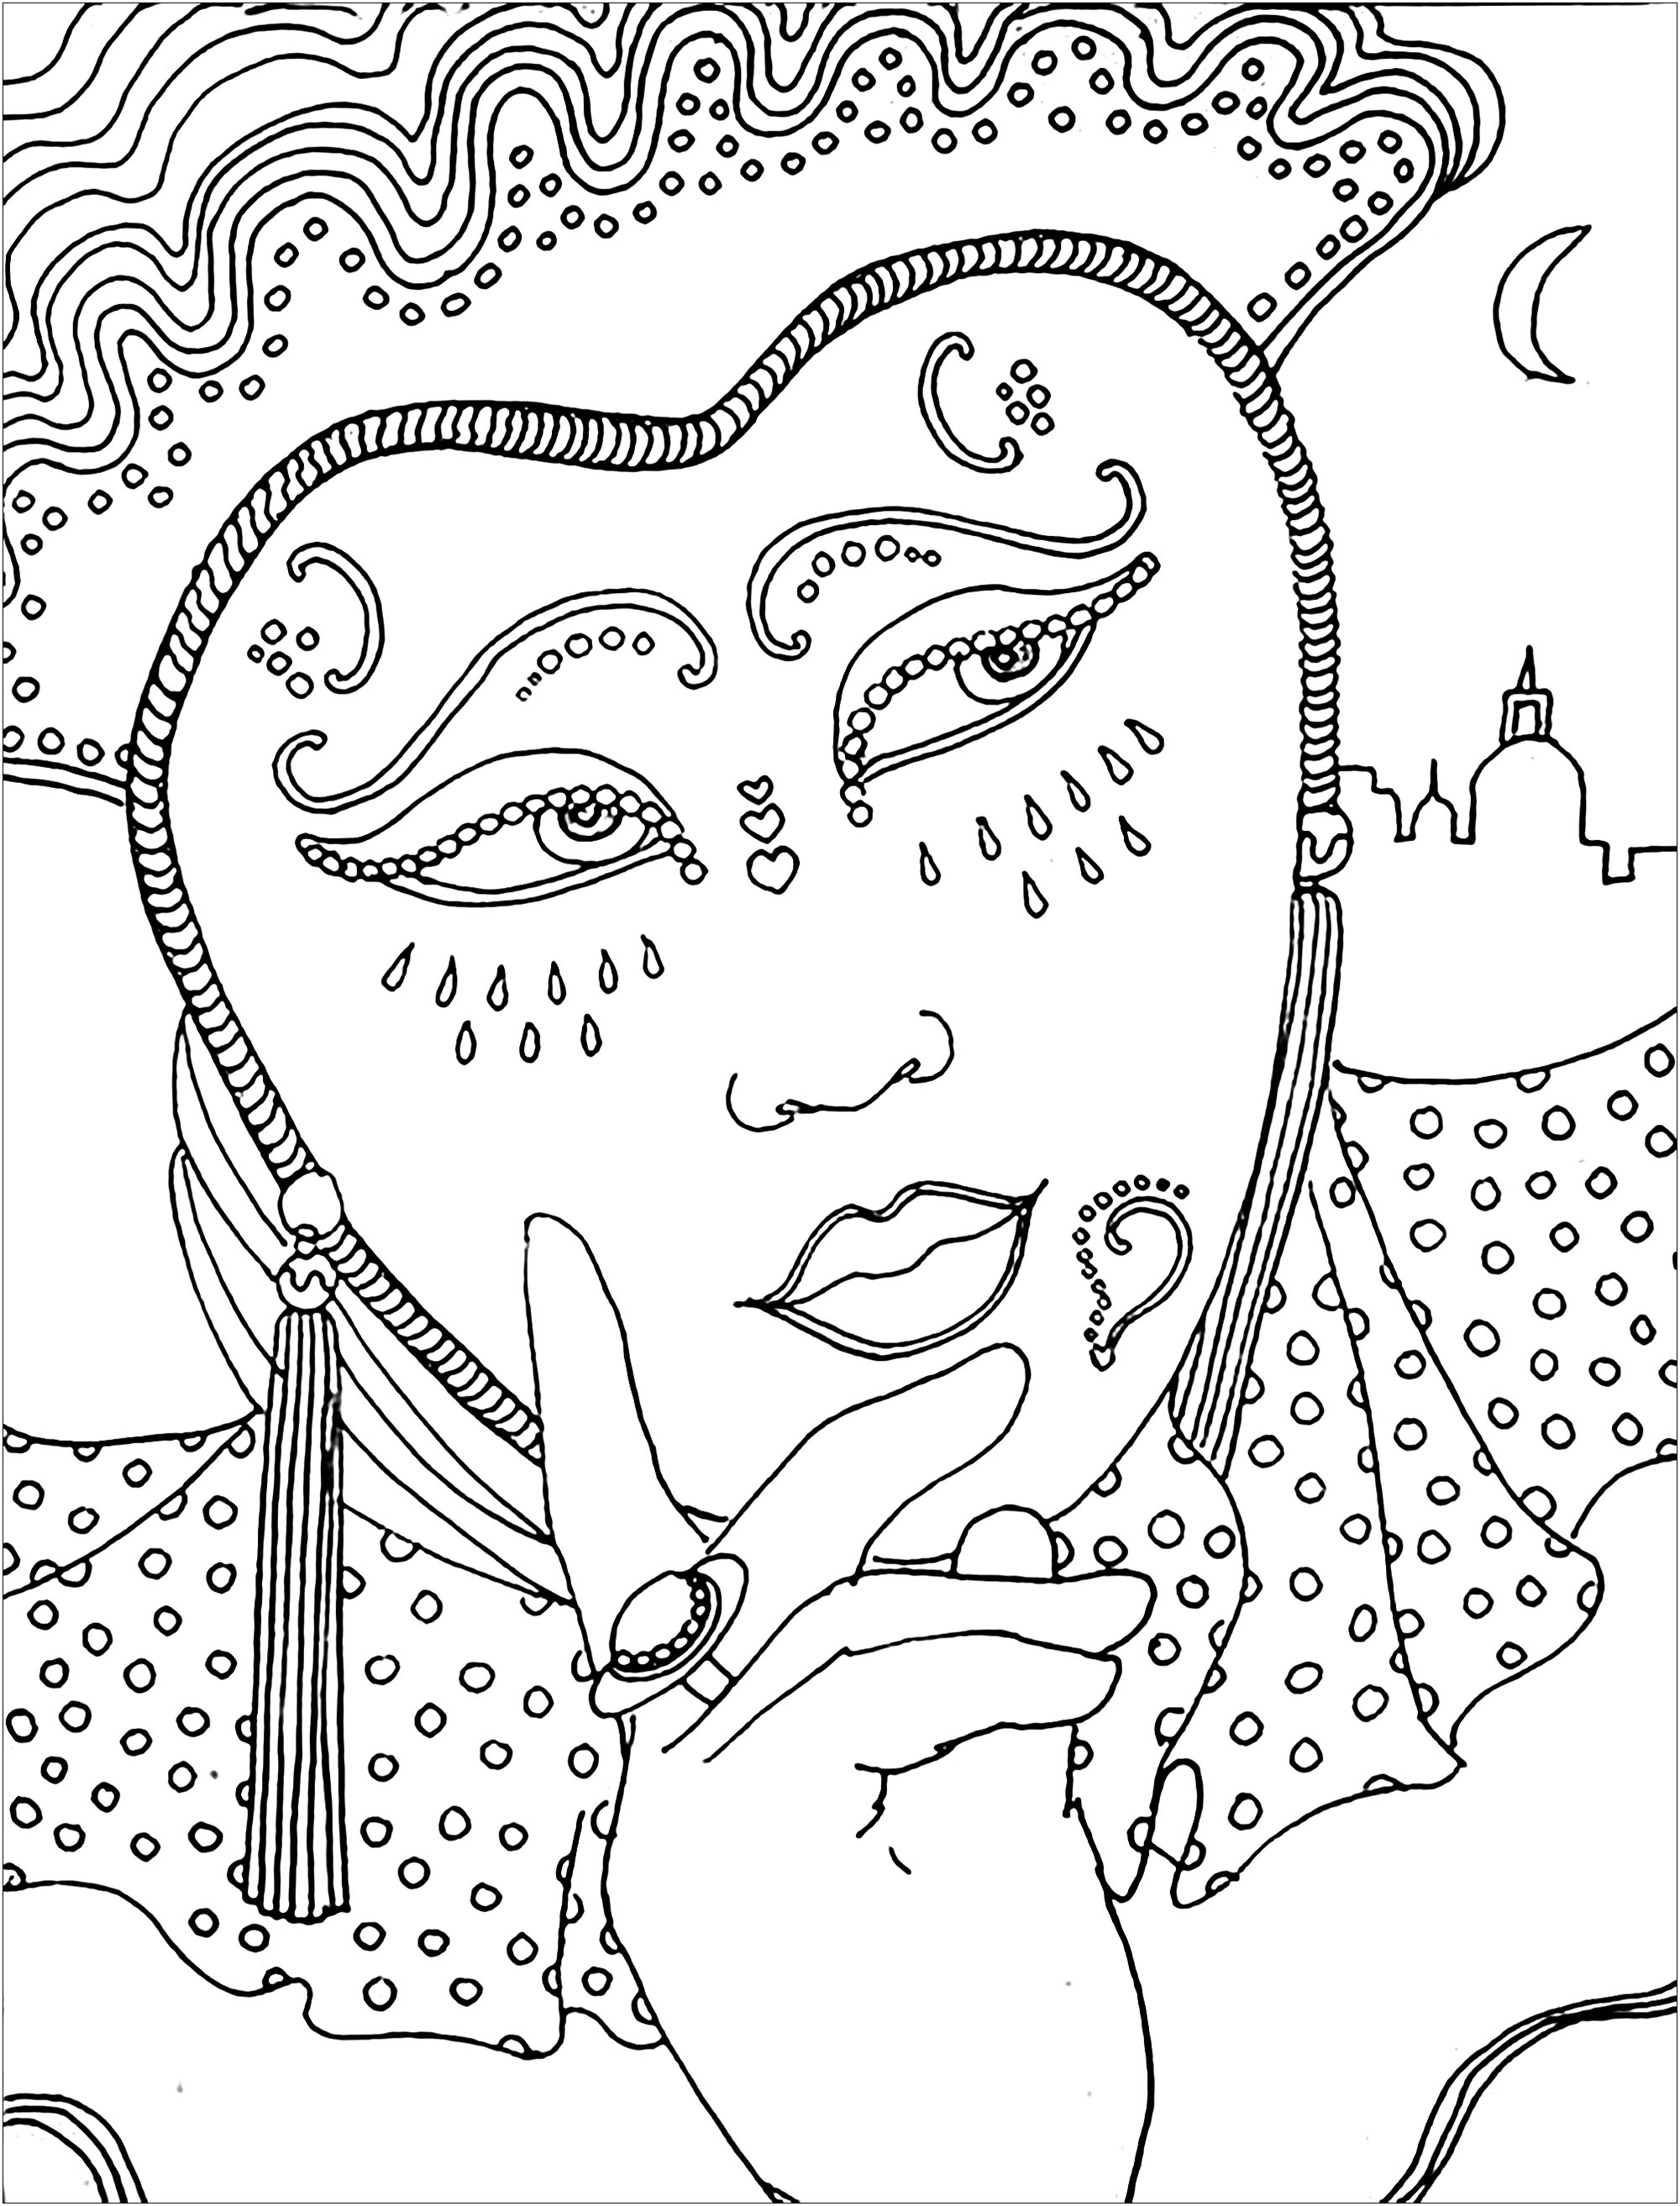 Nachdenkliche Frau mit schöner Maske und Kleid, während des Karnevals, Künstler : Kerozen